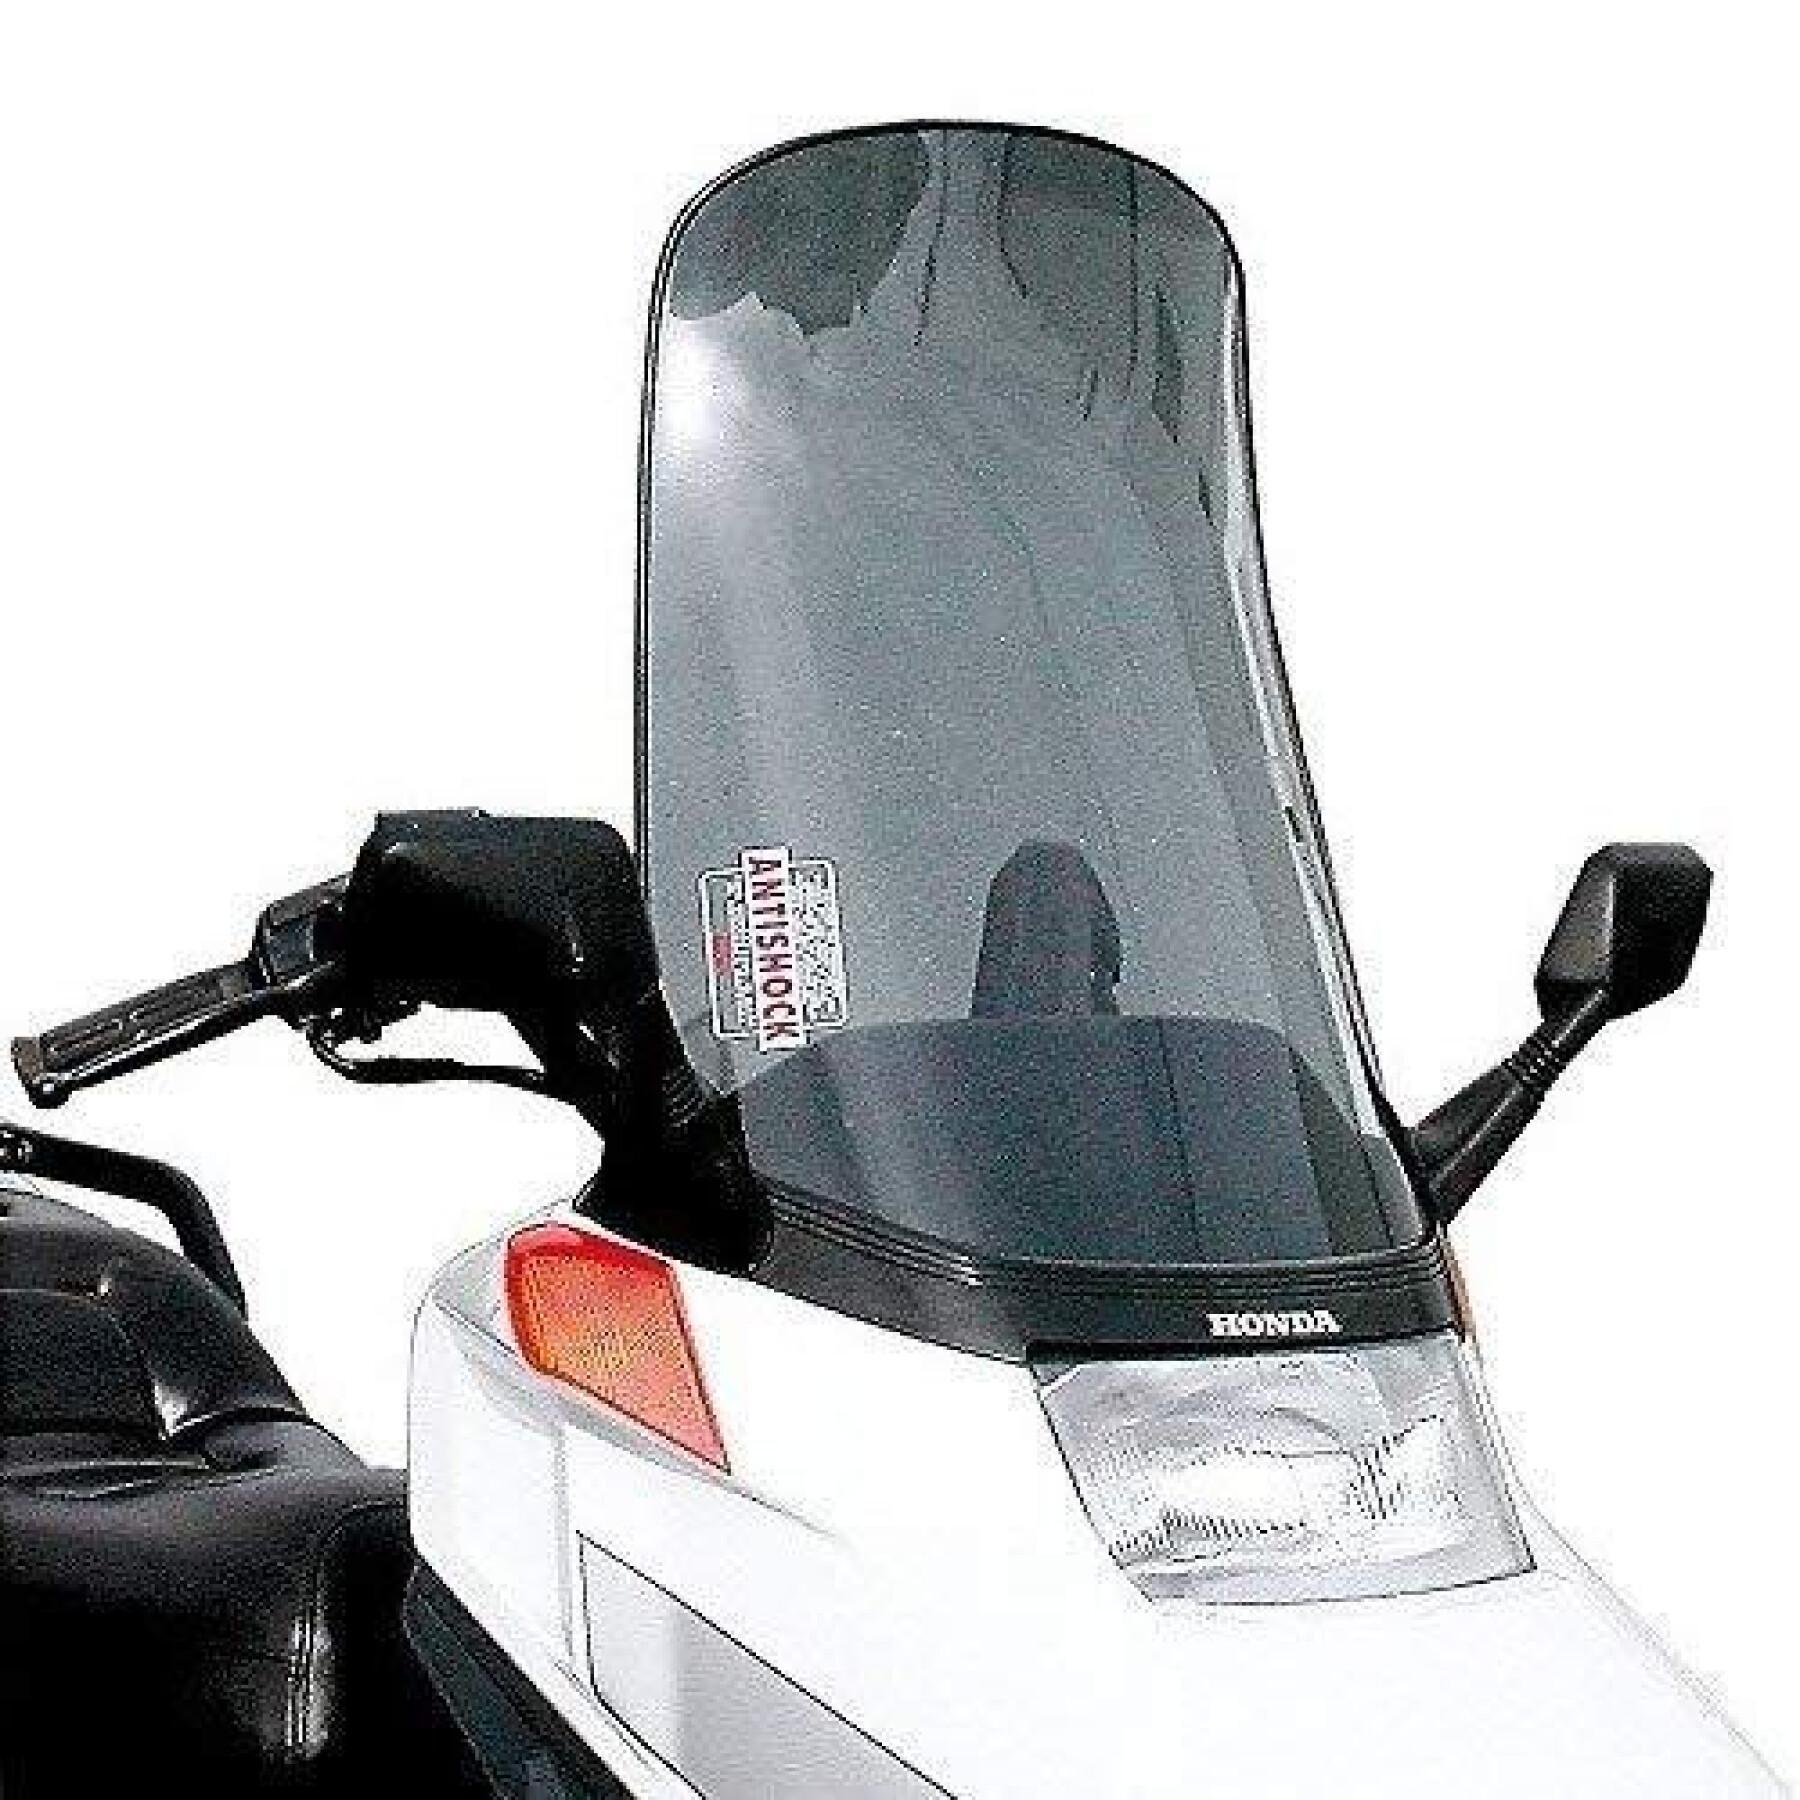 Pare-brise scooter Givi Honda CN 50 (1989 à 2000)